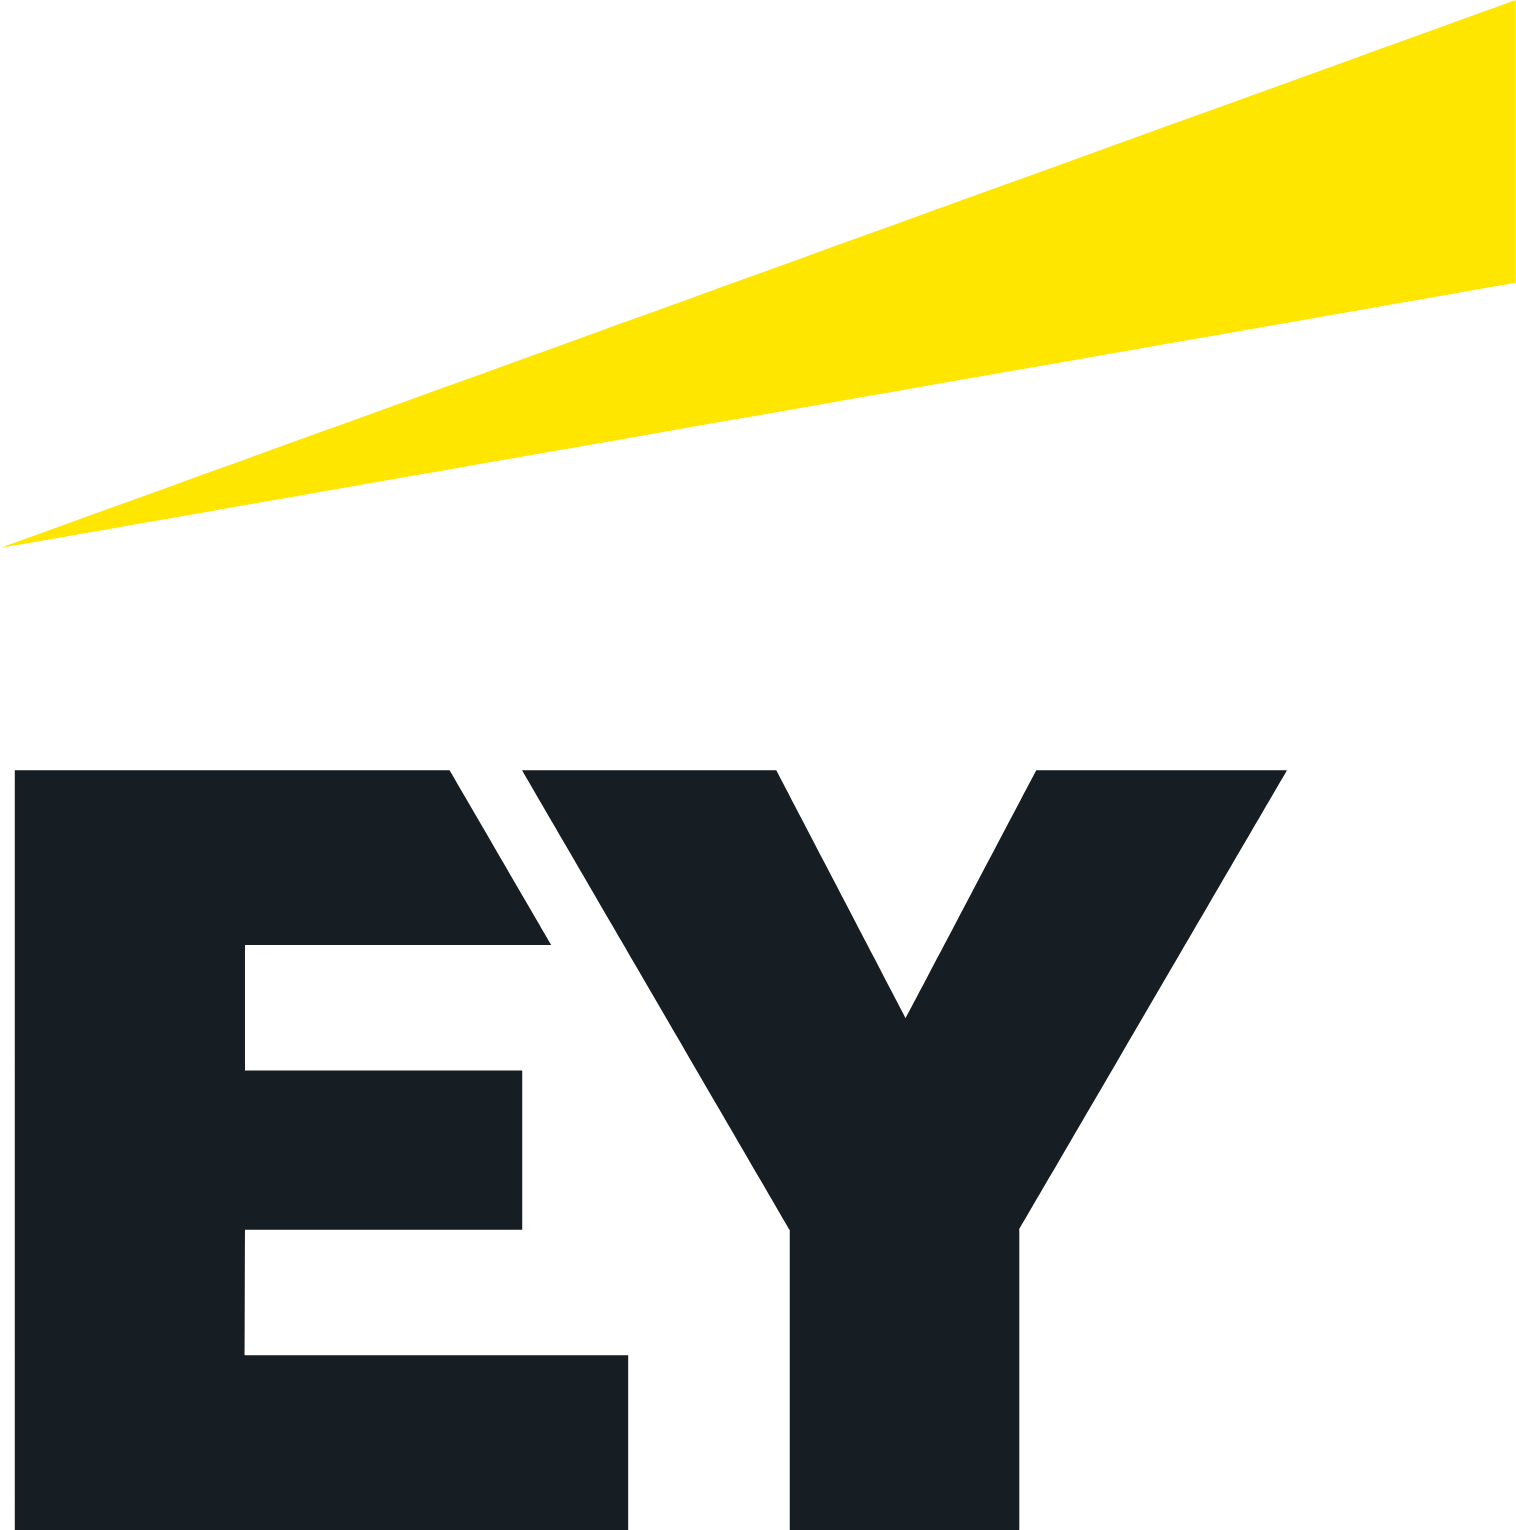 Ernst & Young logo (transparent PNG)